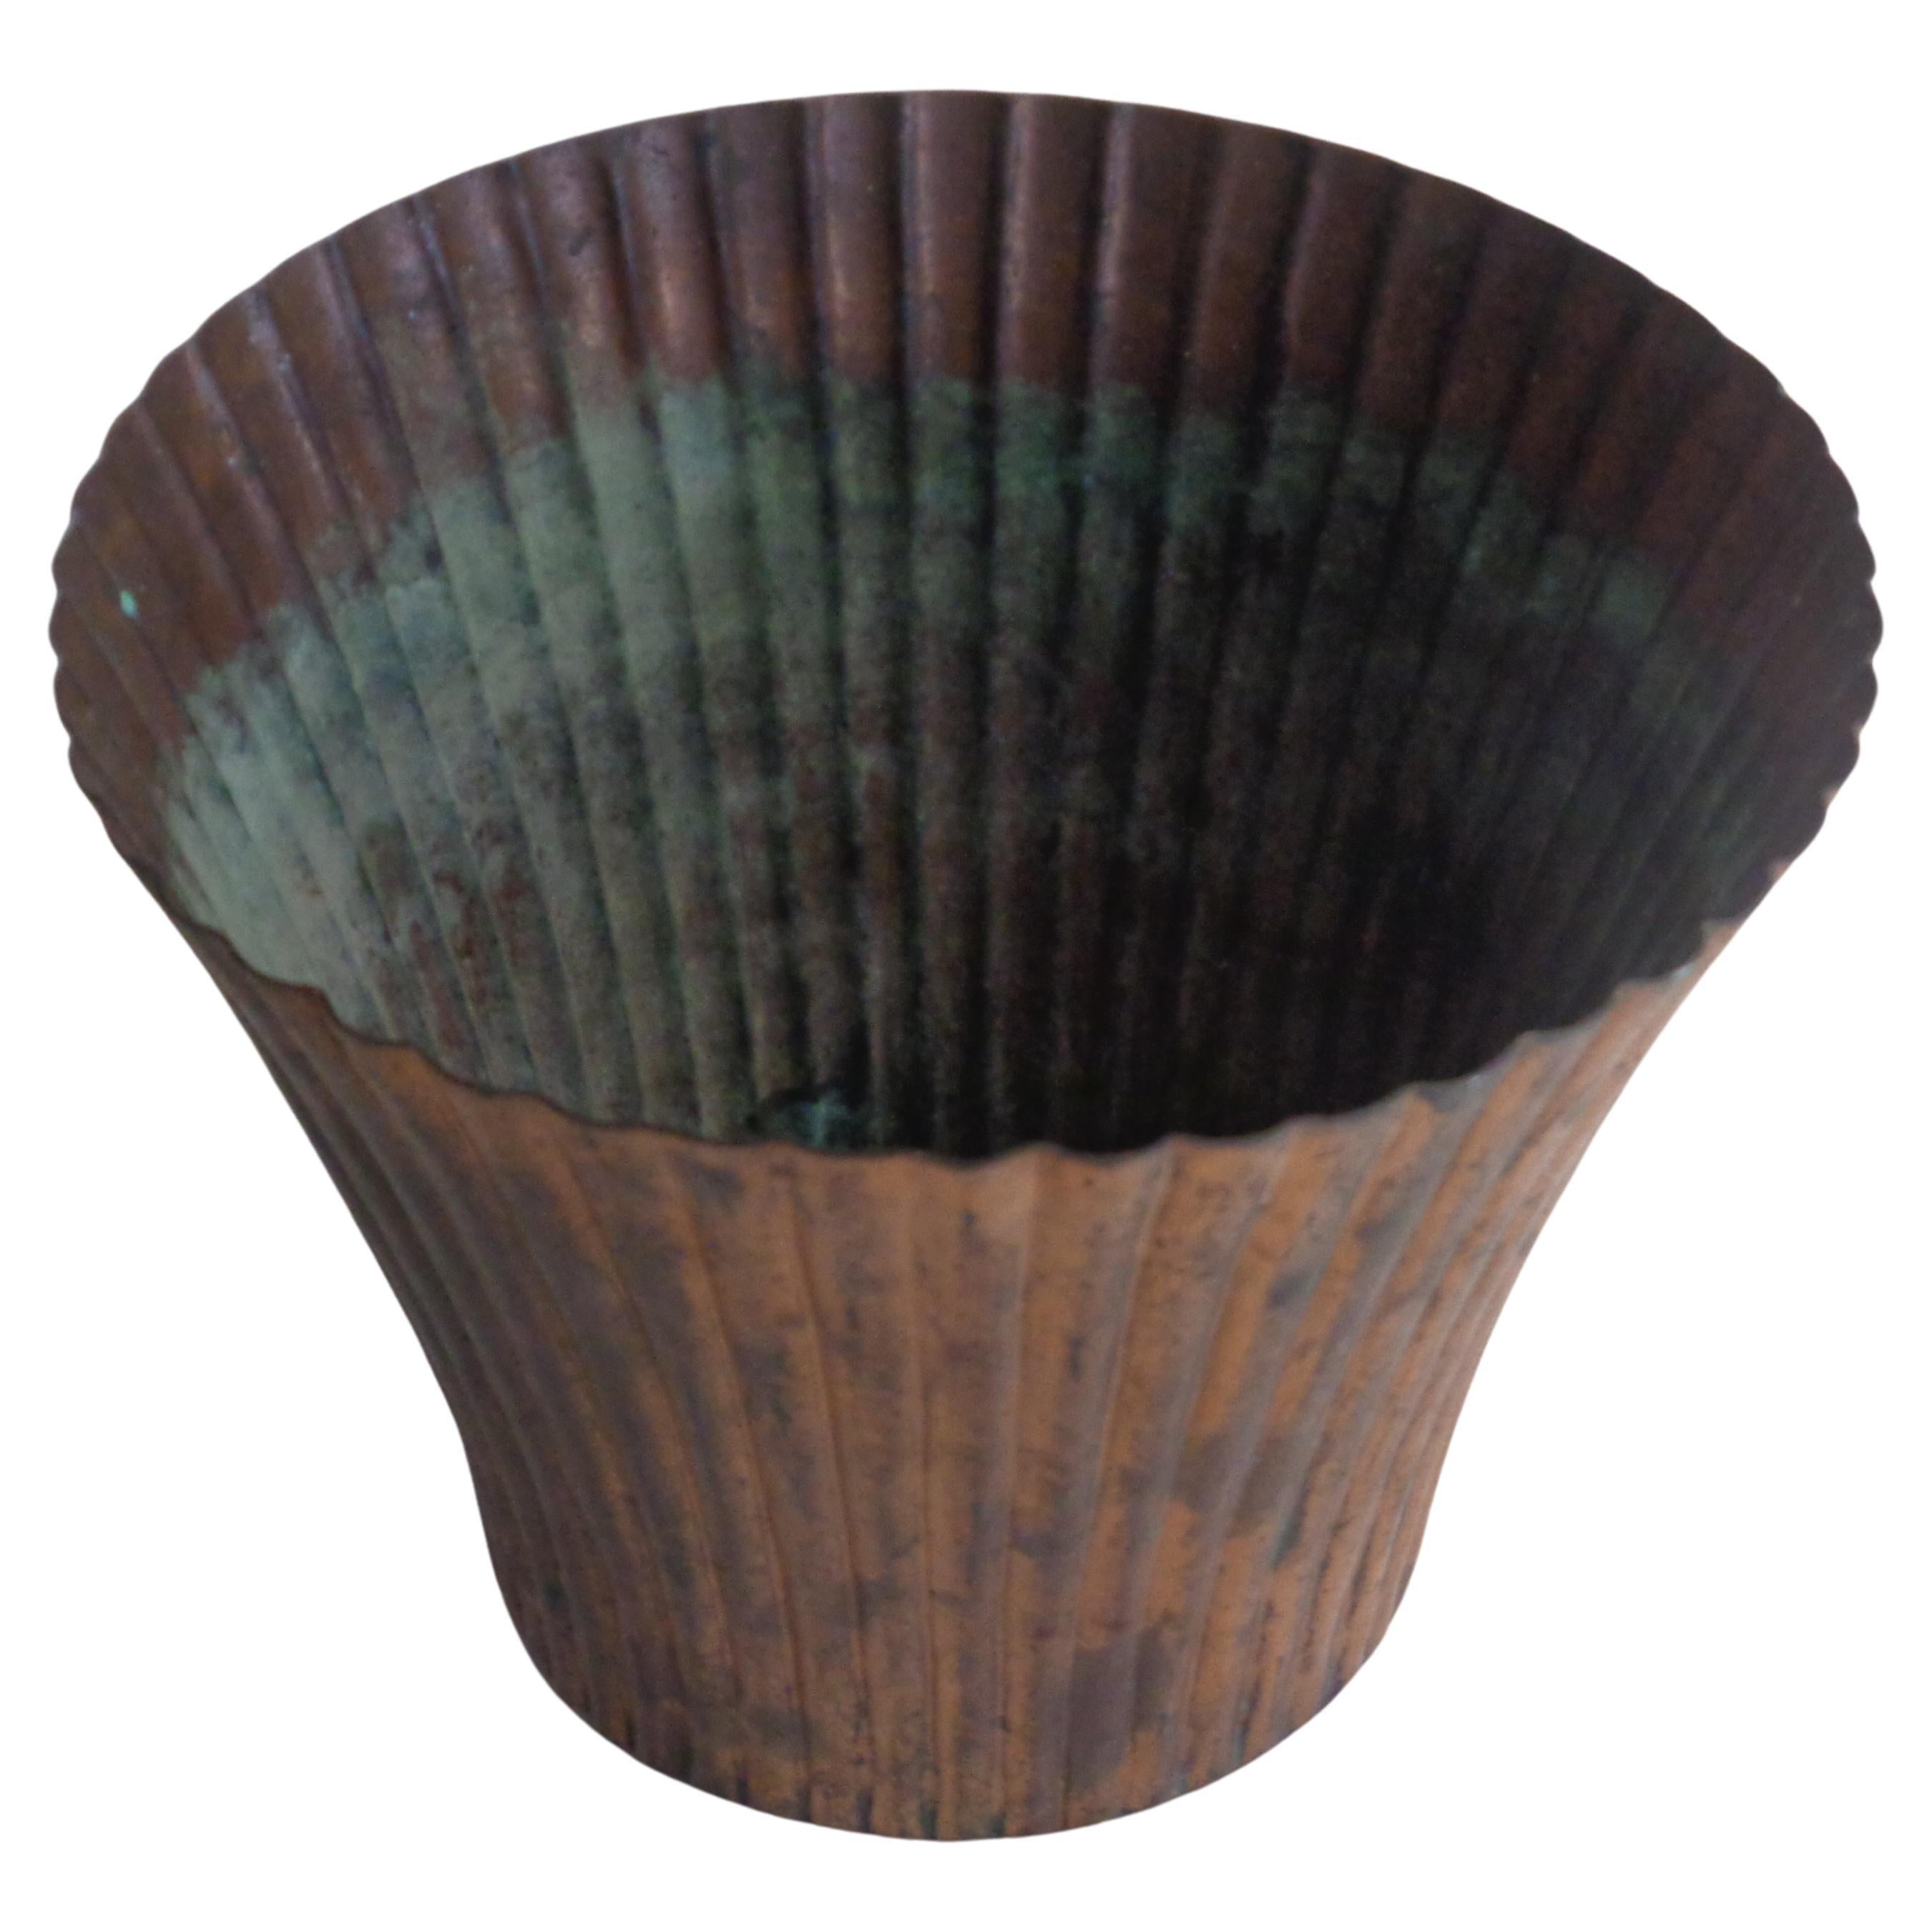 Vase Art Déco américain en cuivre cannelé à bord évasé en patine vert-de-gris oxydée vieillie. Chase Brass and Copper Company ( signé avec le logo sur le dessous ) Circa 1930's. Mesure 5 1/2